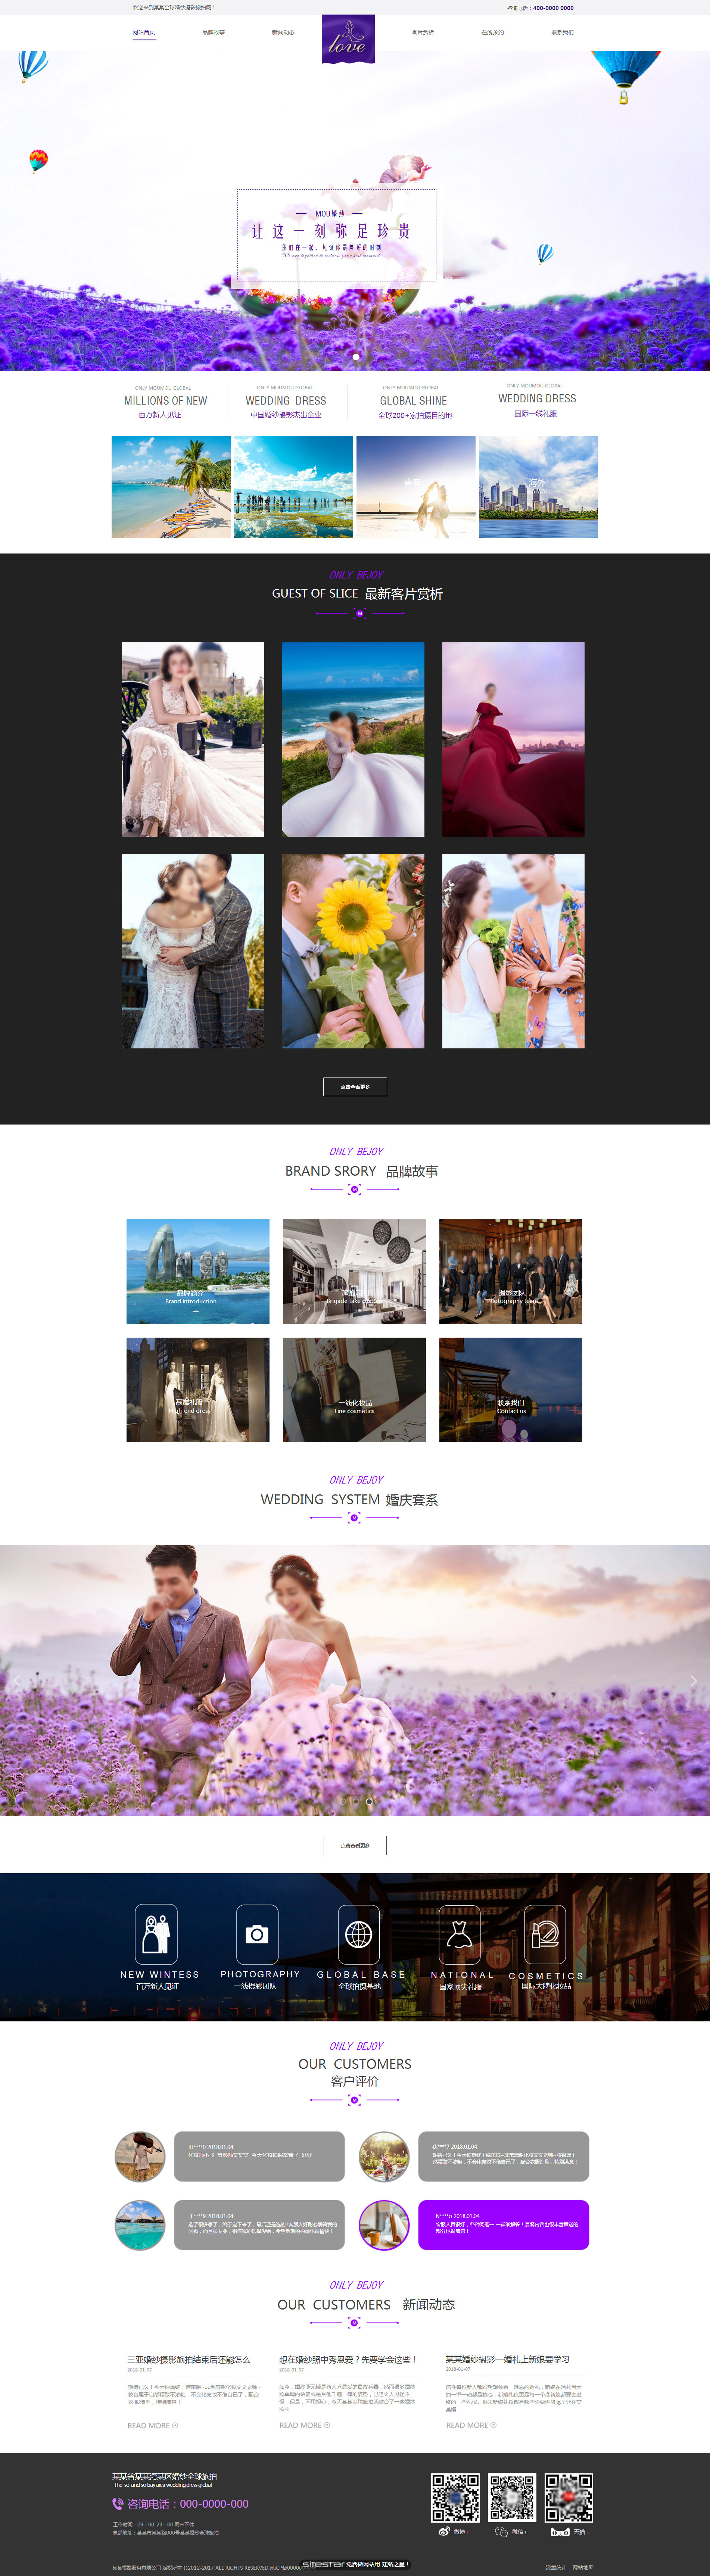 婚礼、婚庆网站模板-wedding-388